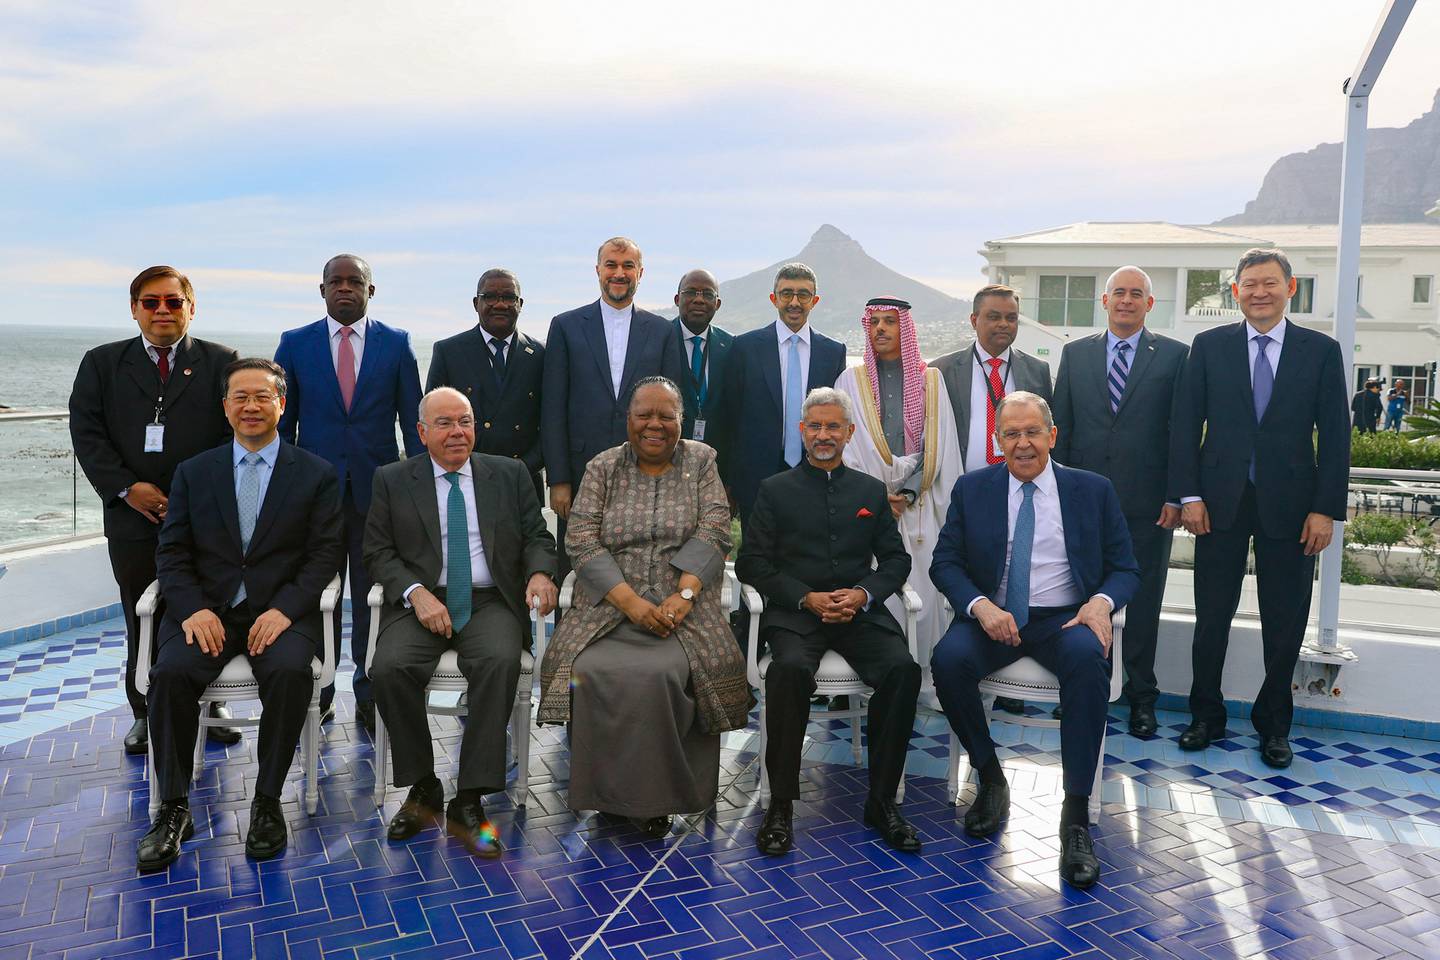 BRIKS-alliansen består av Brasil, Russland, India, Kina og Sør-Afrika. Tidligere i juni møttes landenes utenriksministere (på første rad her) i Cape Town i Sør-Afrika. I august skal det være toppmøte med landenes ledere i samme land.